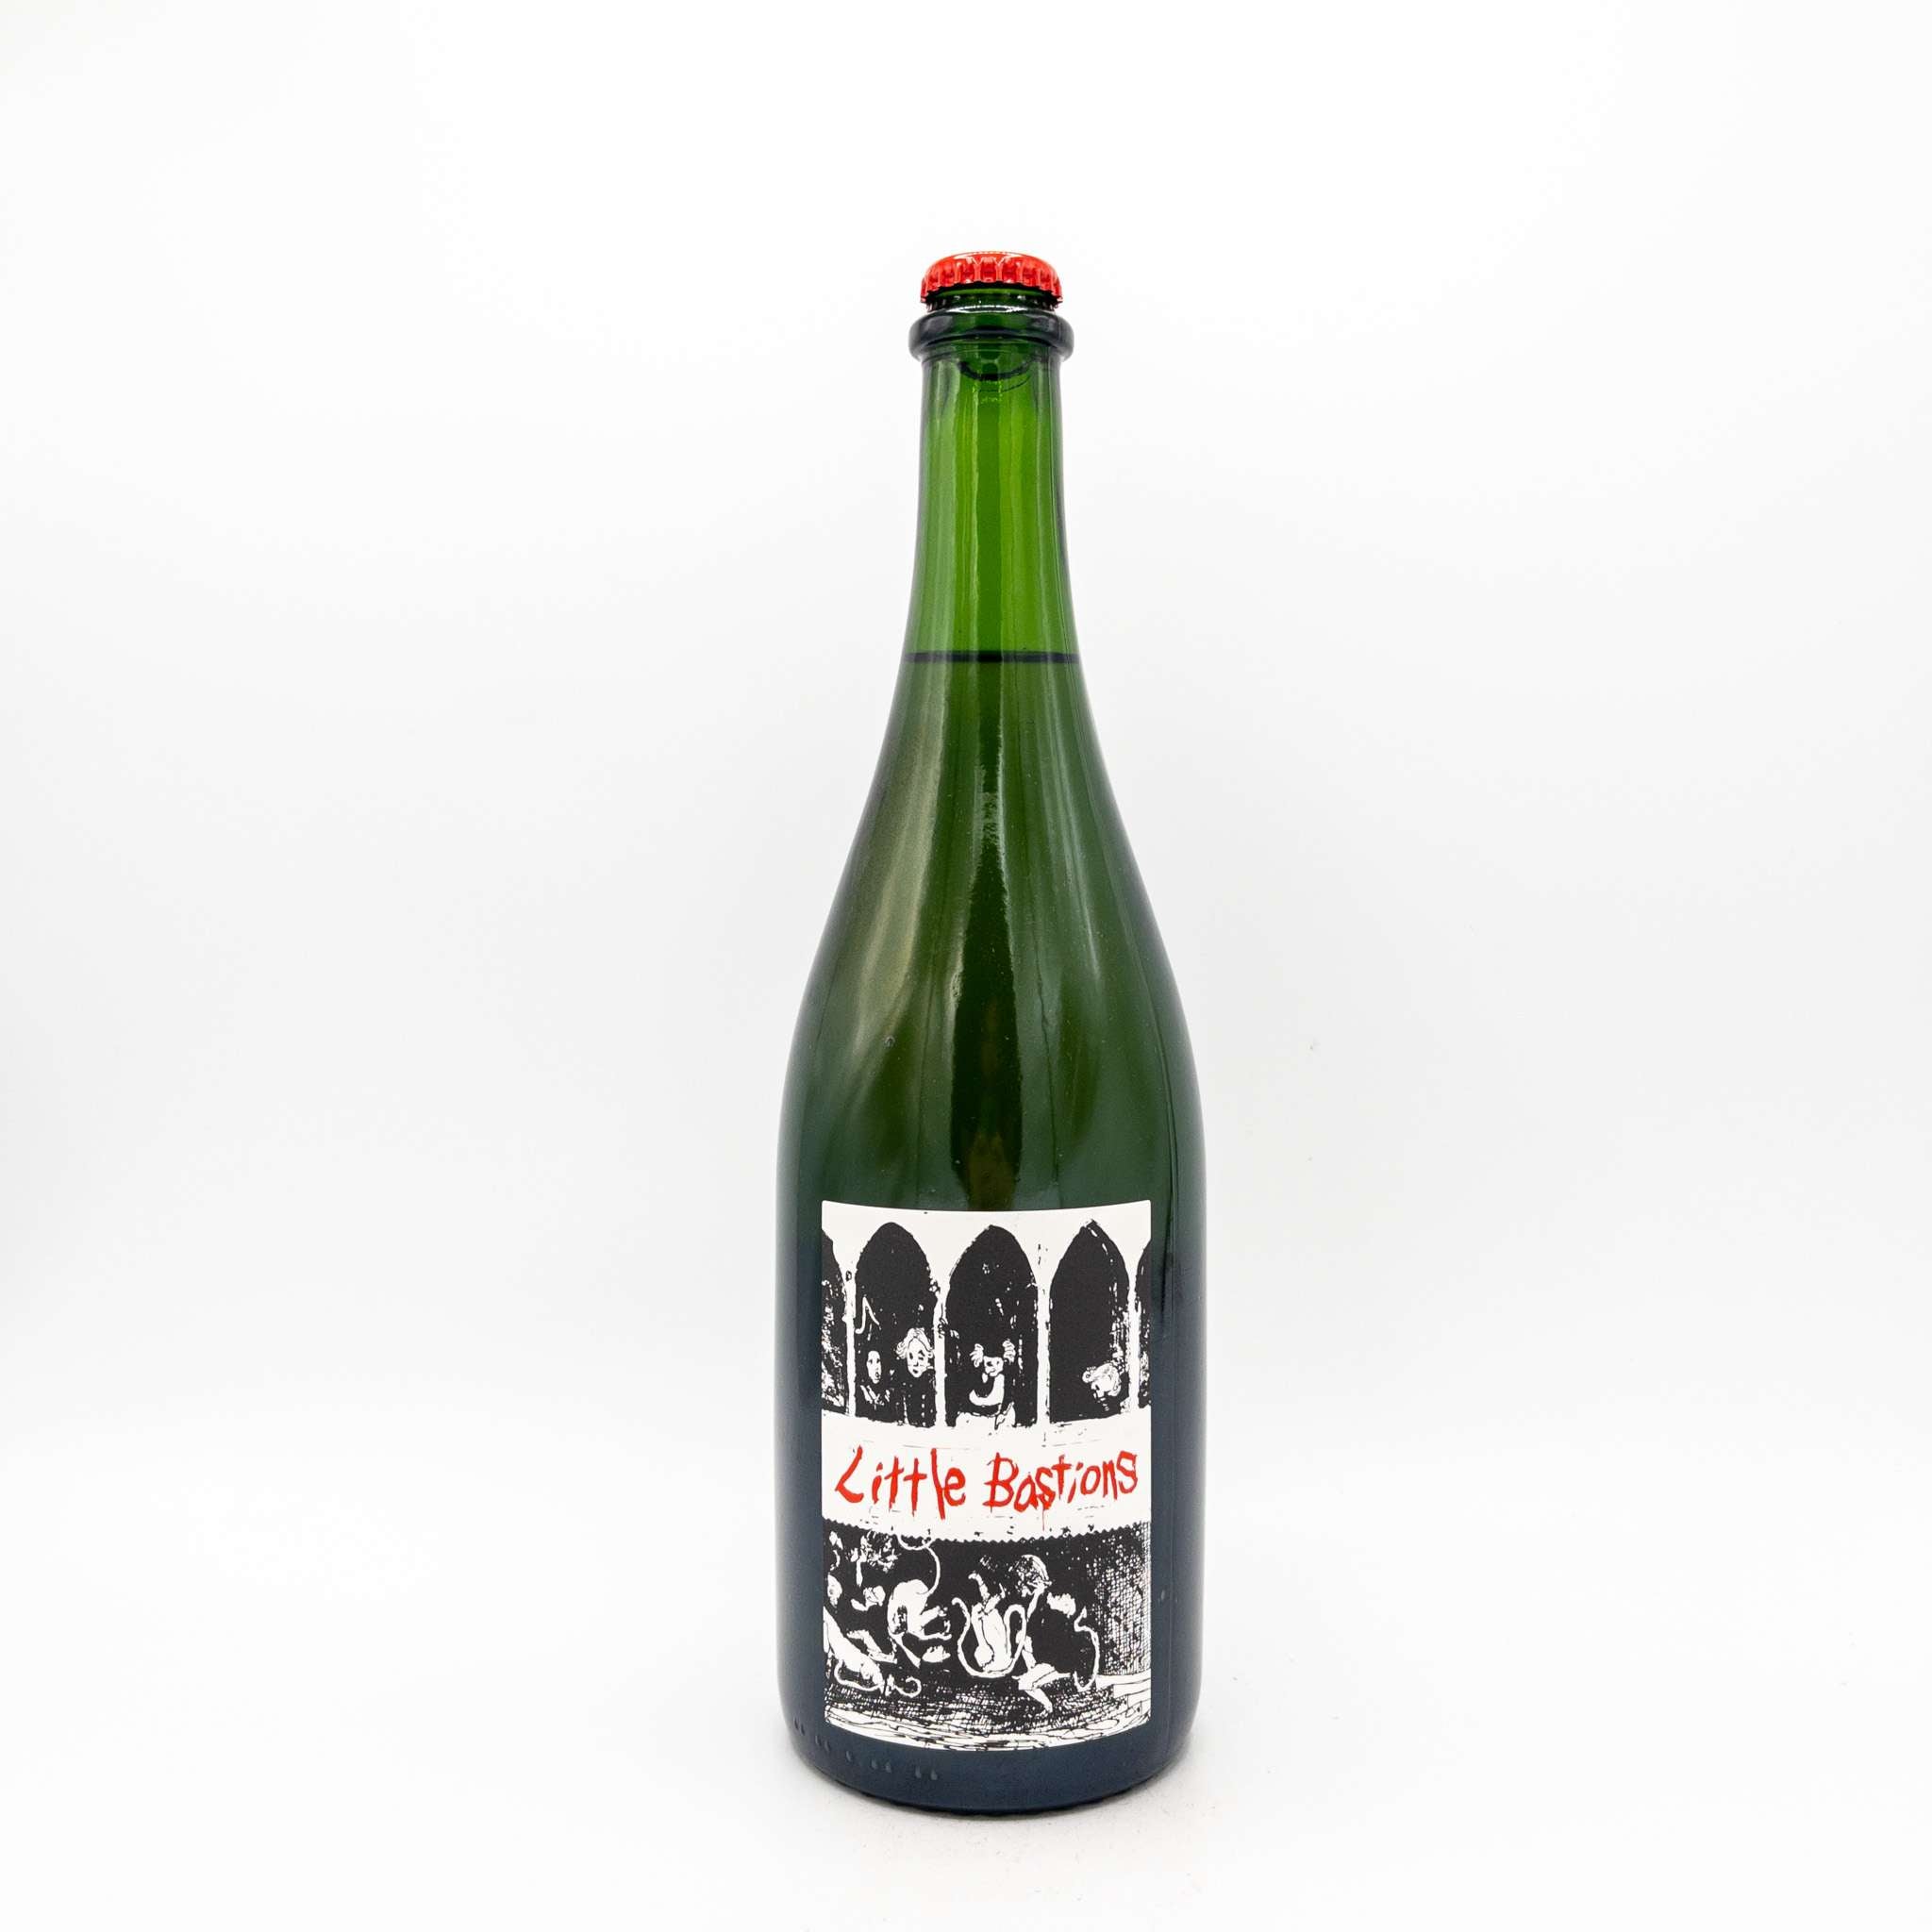 Little Bastions 'LB Barrel Aged Cider' 2021